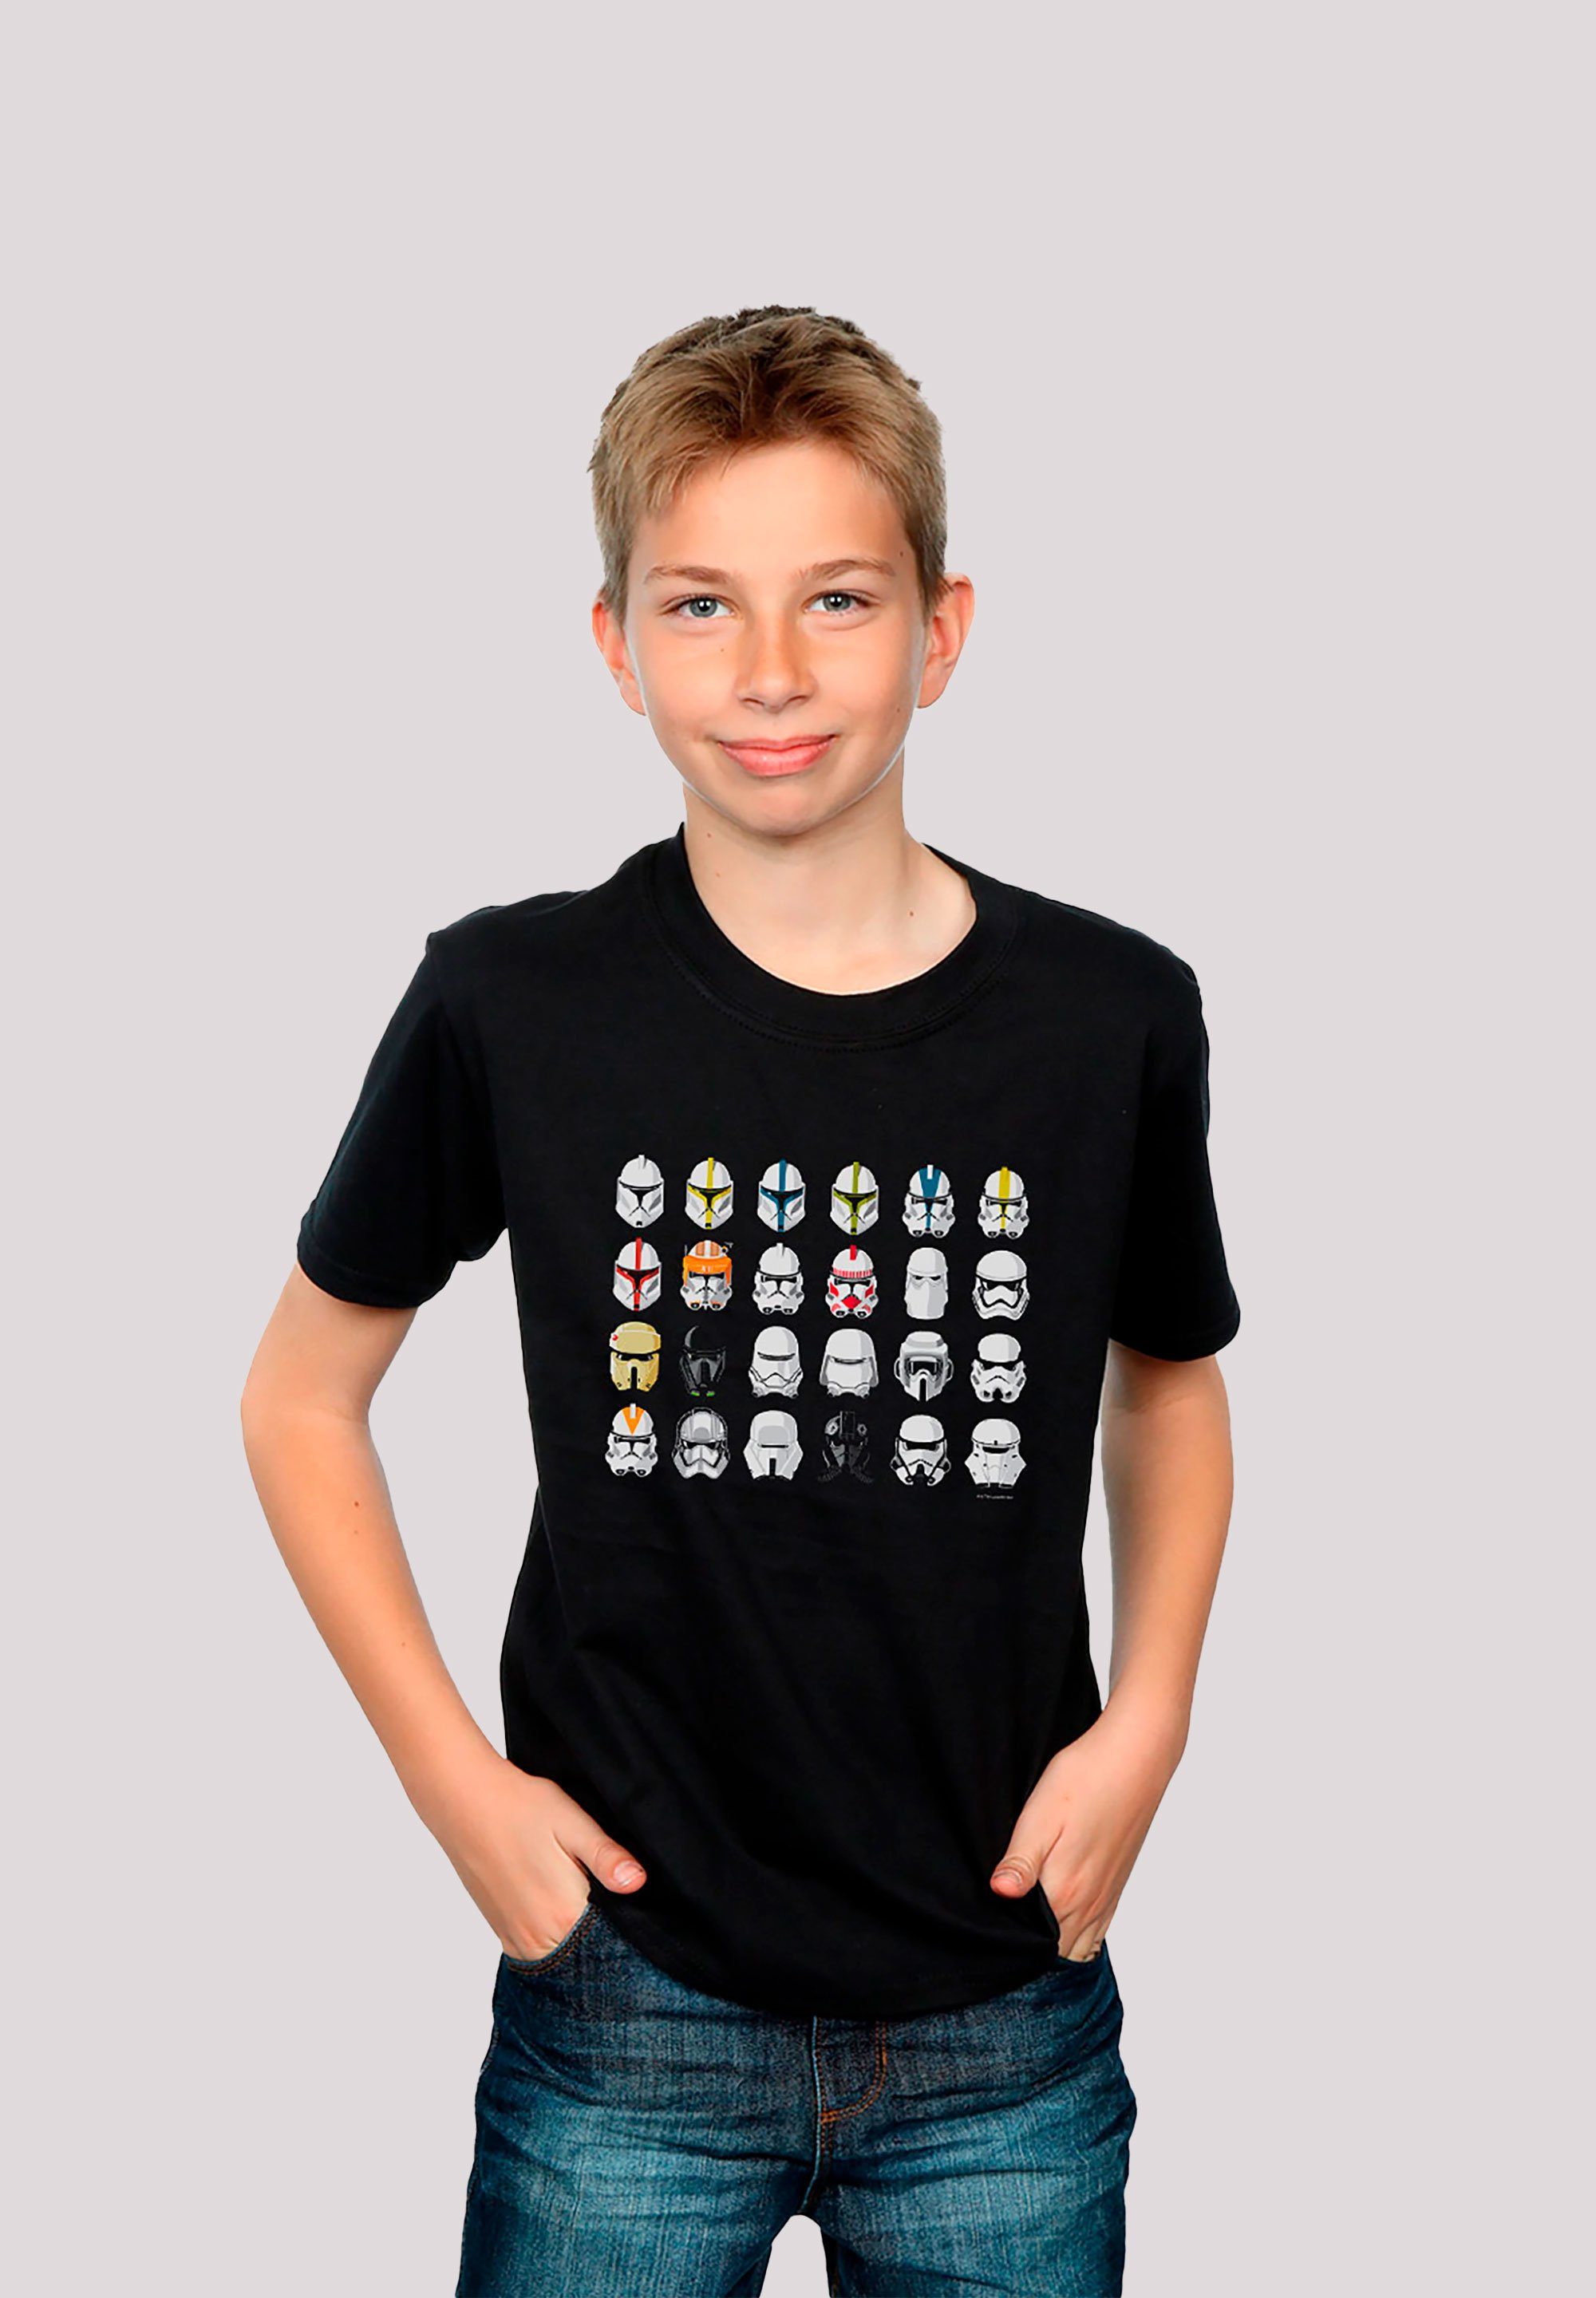 F4NT4STIC T-Shirt Wars Sterne Stormtrooper Piloten Star Krieg Helme der Print schwarz